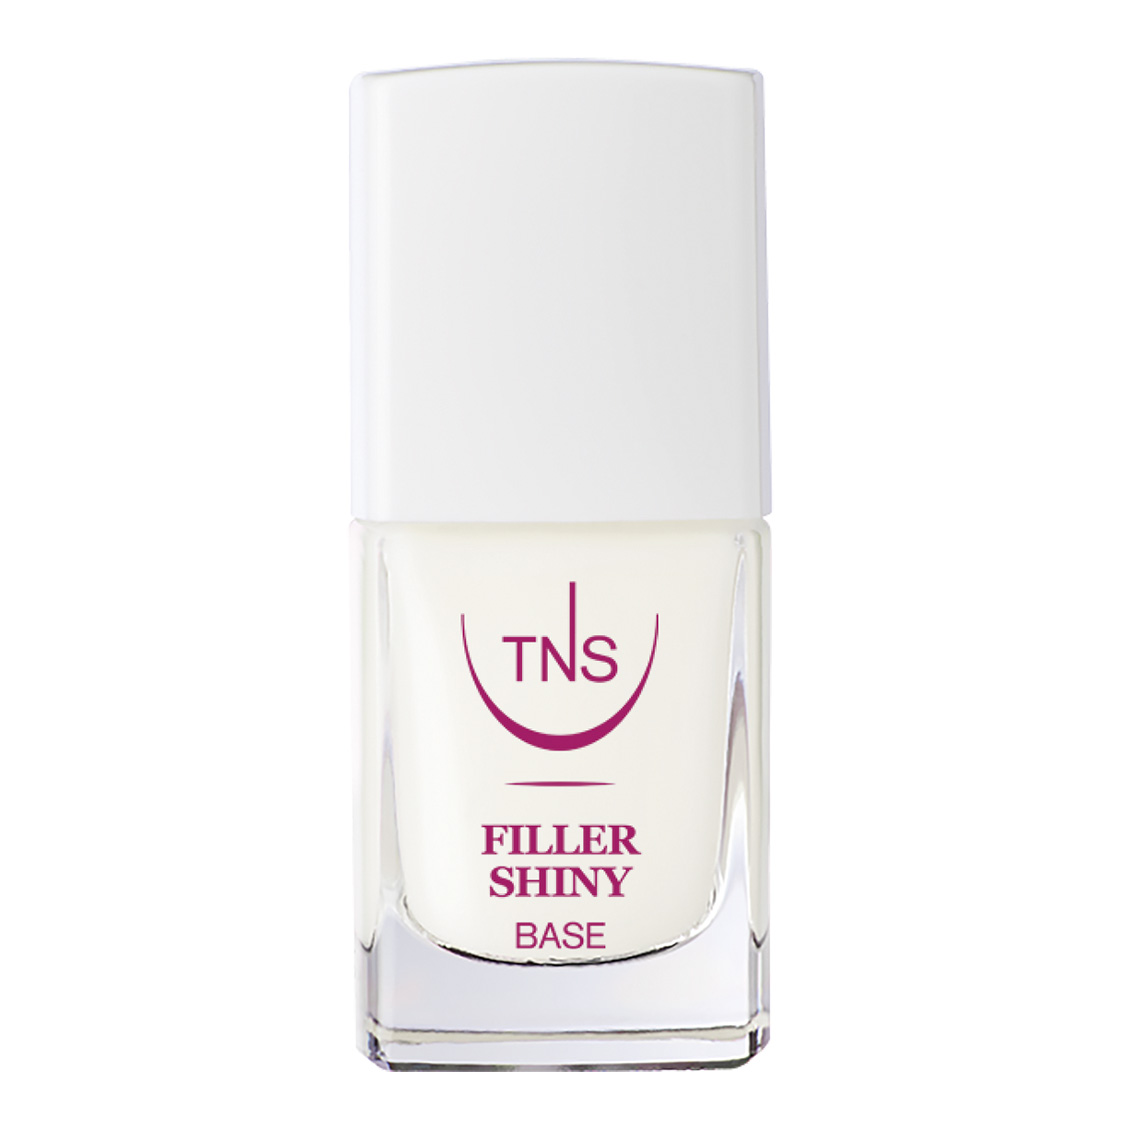 TNS Filler Shiny White glättende Nagellackbasis 10 ml